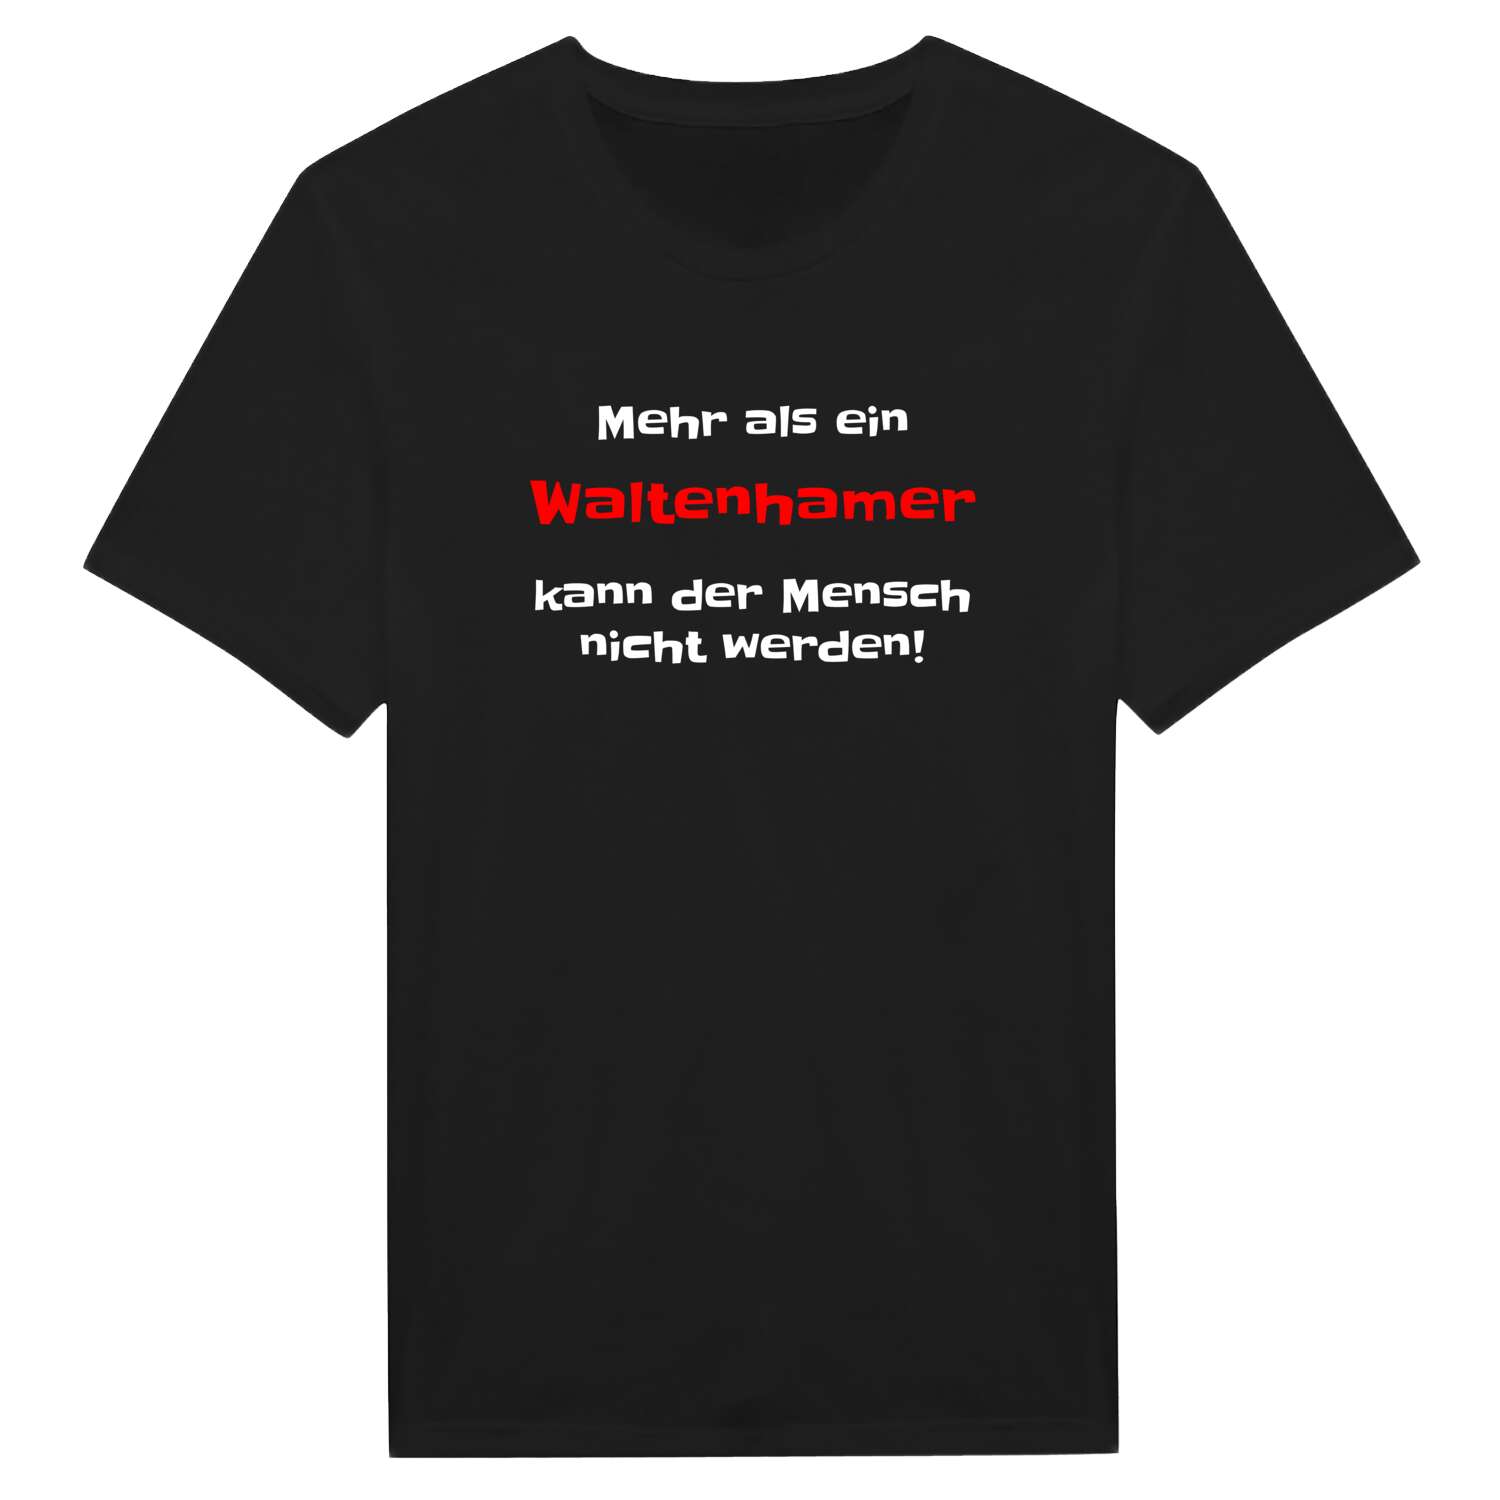 Waltenham T-Shirt »Mehr als ein«